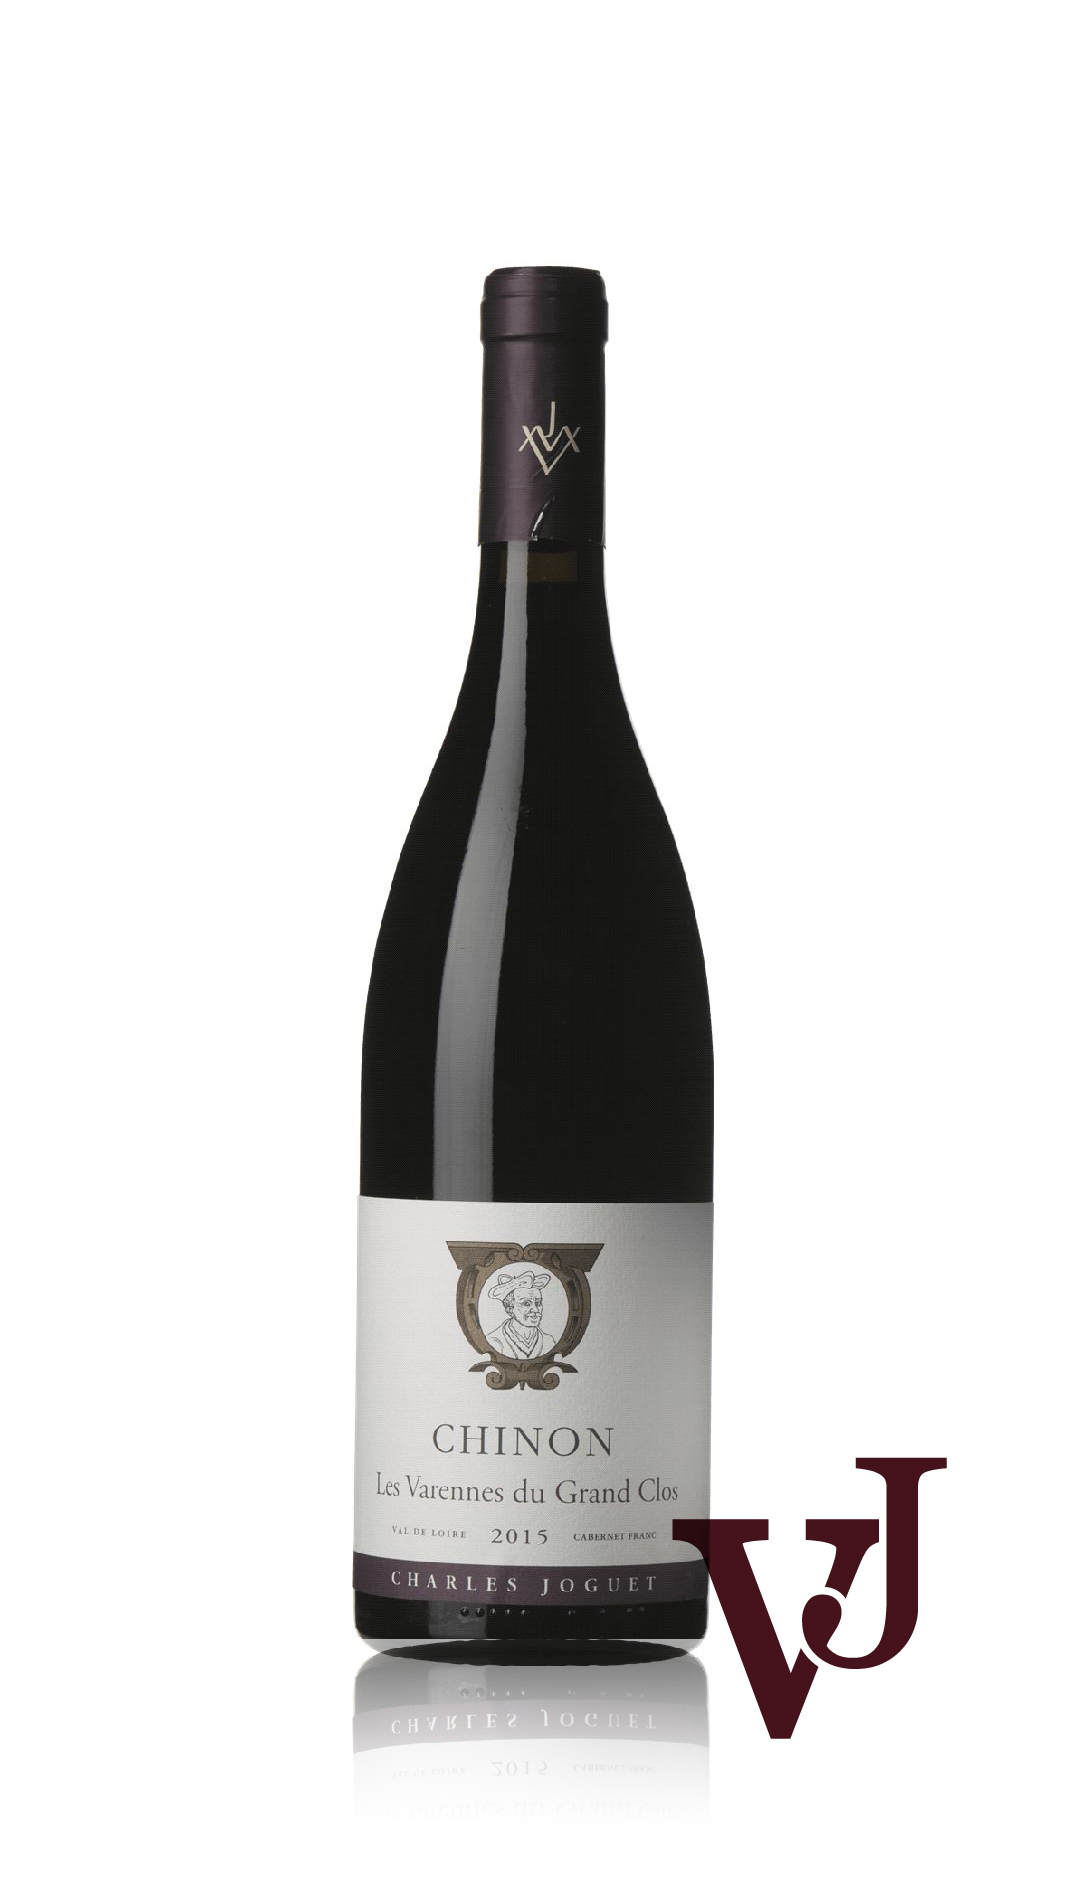 Rött Vin - Chinon Les Varennes du Grand Clos artikel nummer 9009801 från producenten Charles Joguet från området Frankrike